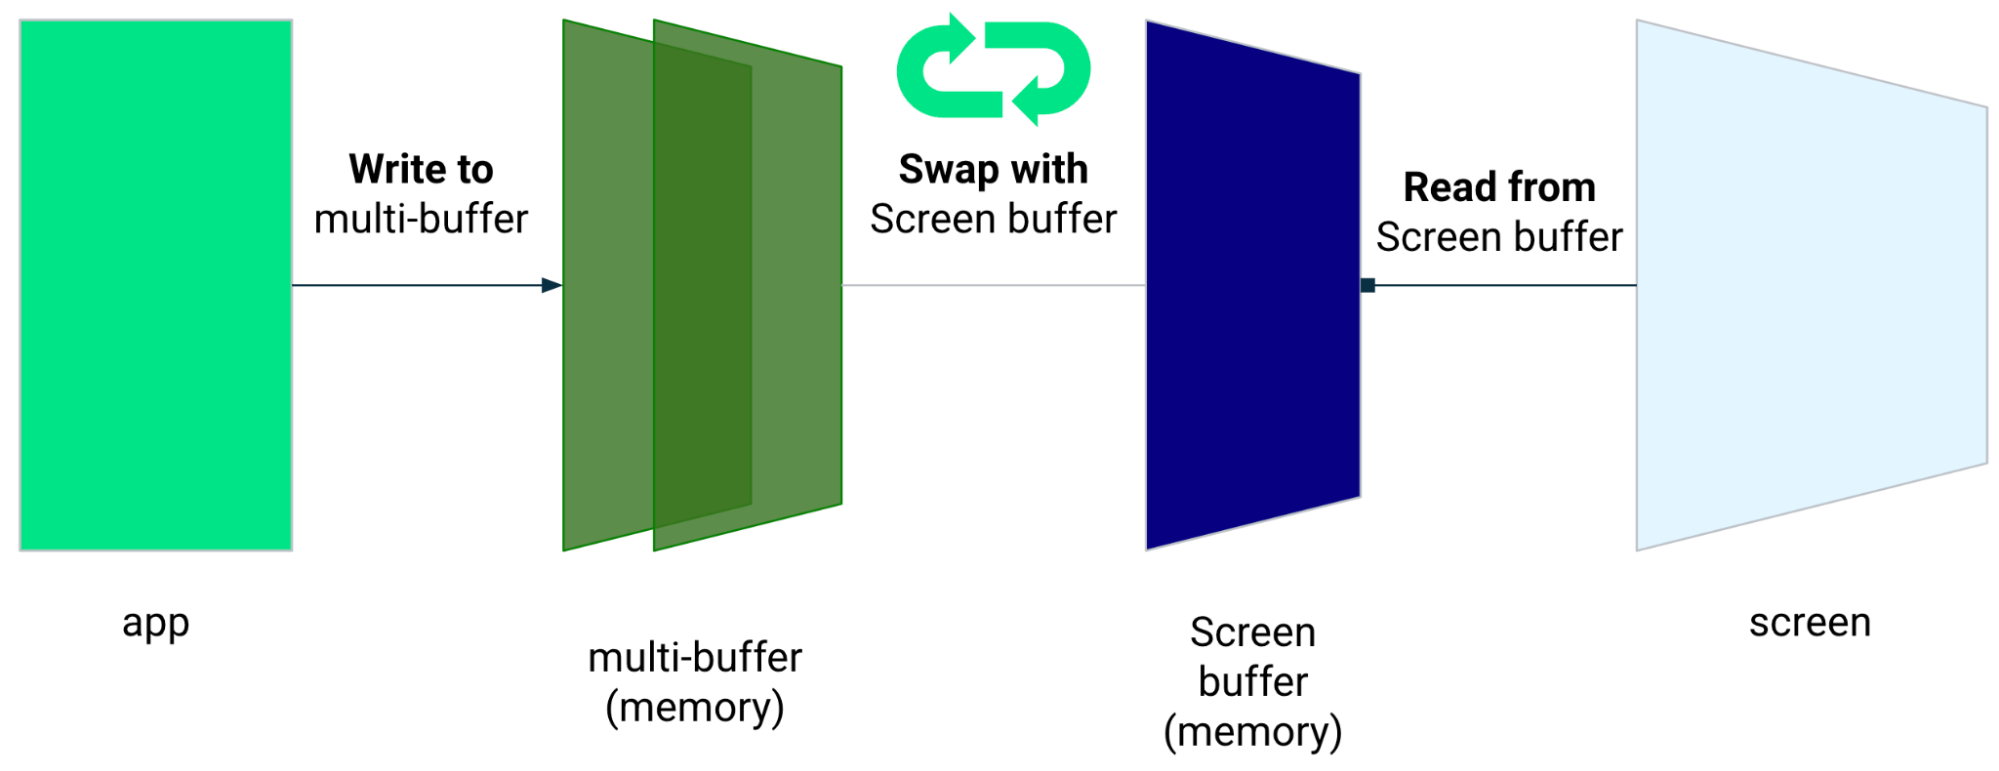 Aplikacja zapisuje do wielu buforów, które są zastępowane buforem ekranu. Aplikacja odczytuje dane z bufora ekranu.